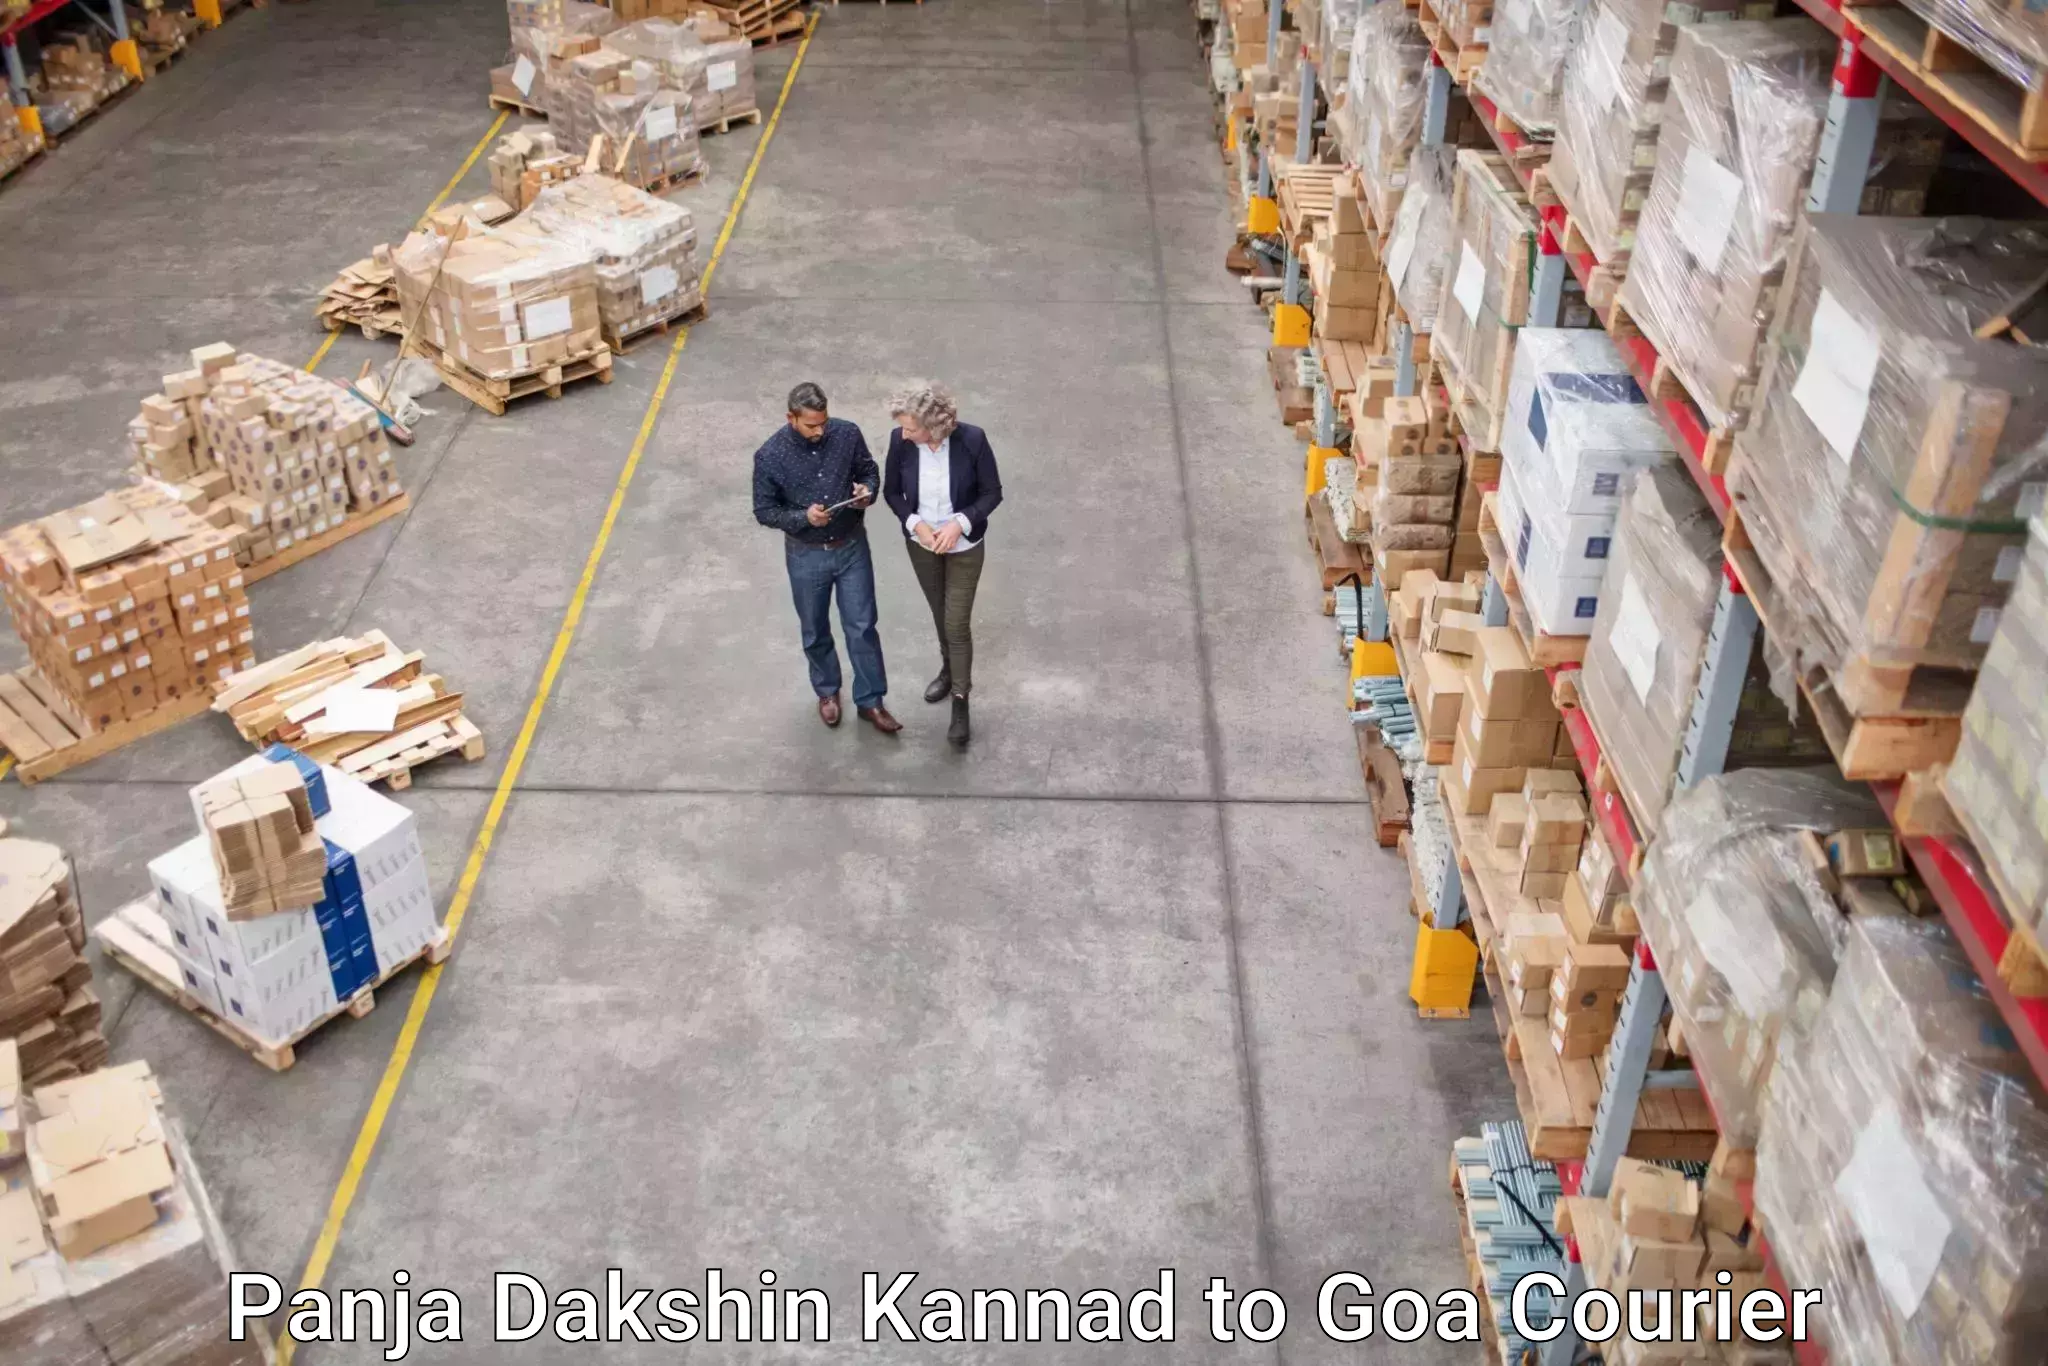 Courier tracking online Panja Dakshin Kannad to Panaji